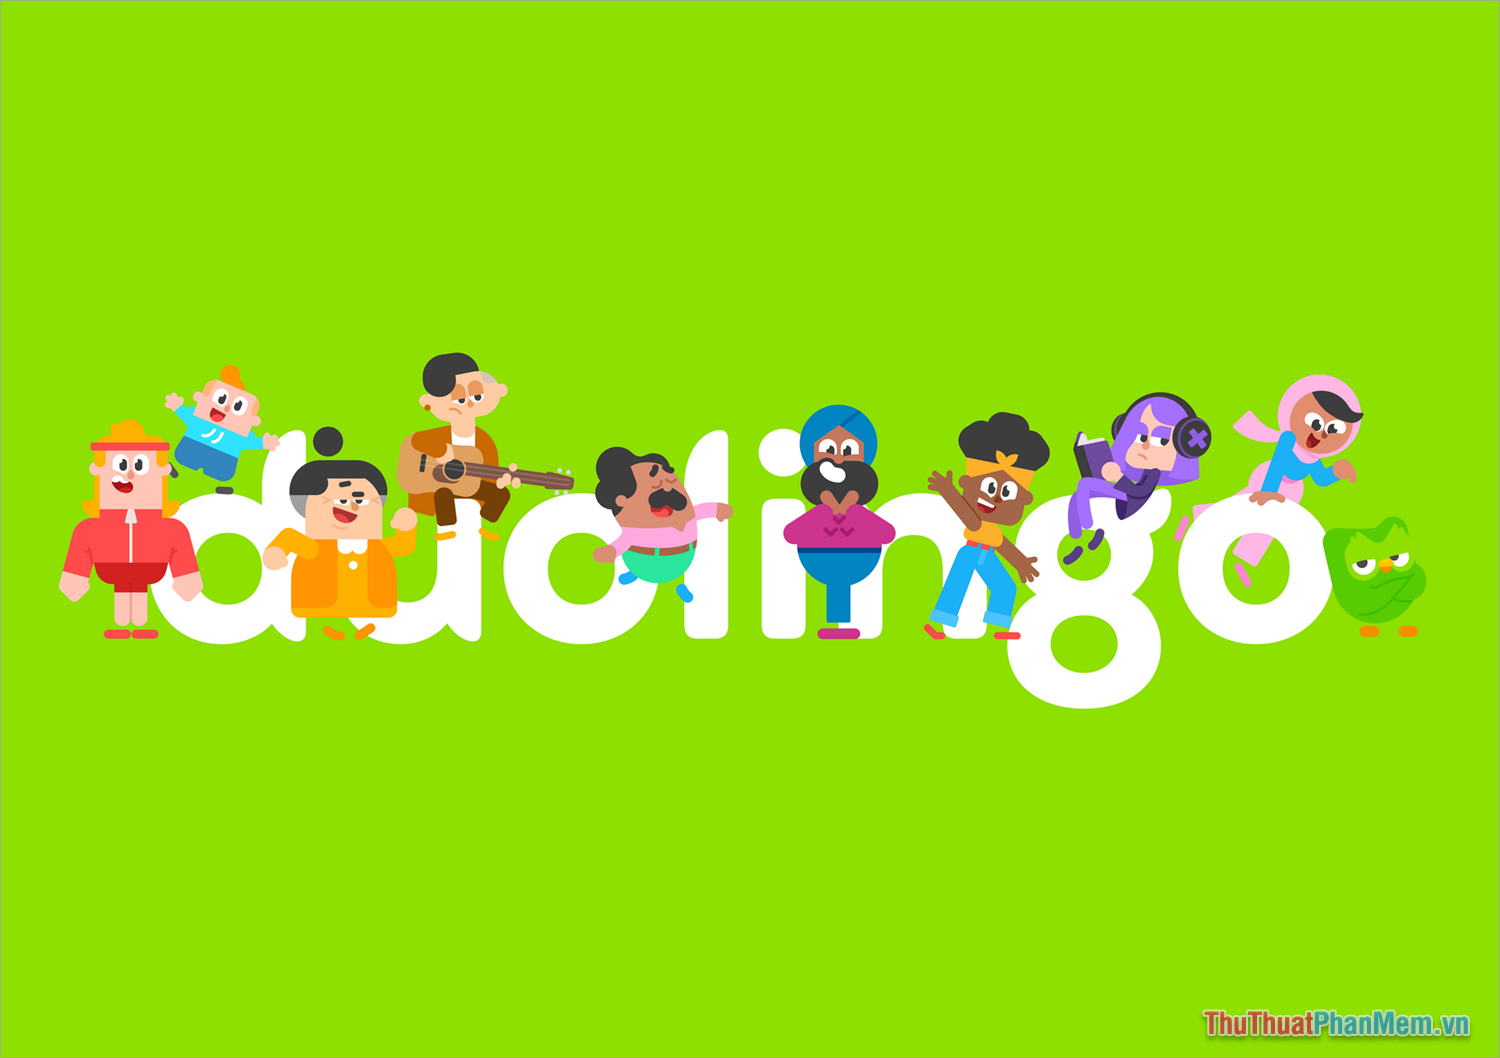 Duolingo - Ứng dụng học tiếng Anh số 1 trên điện thoại